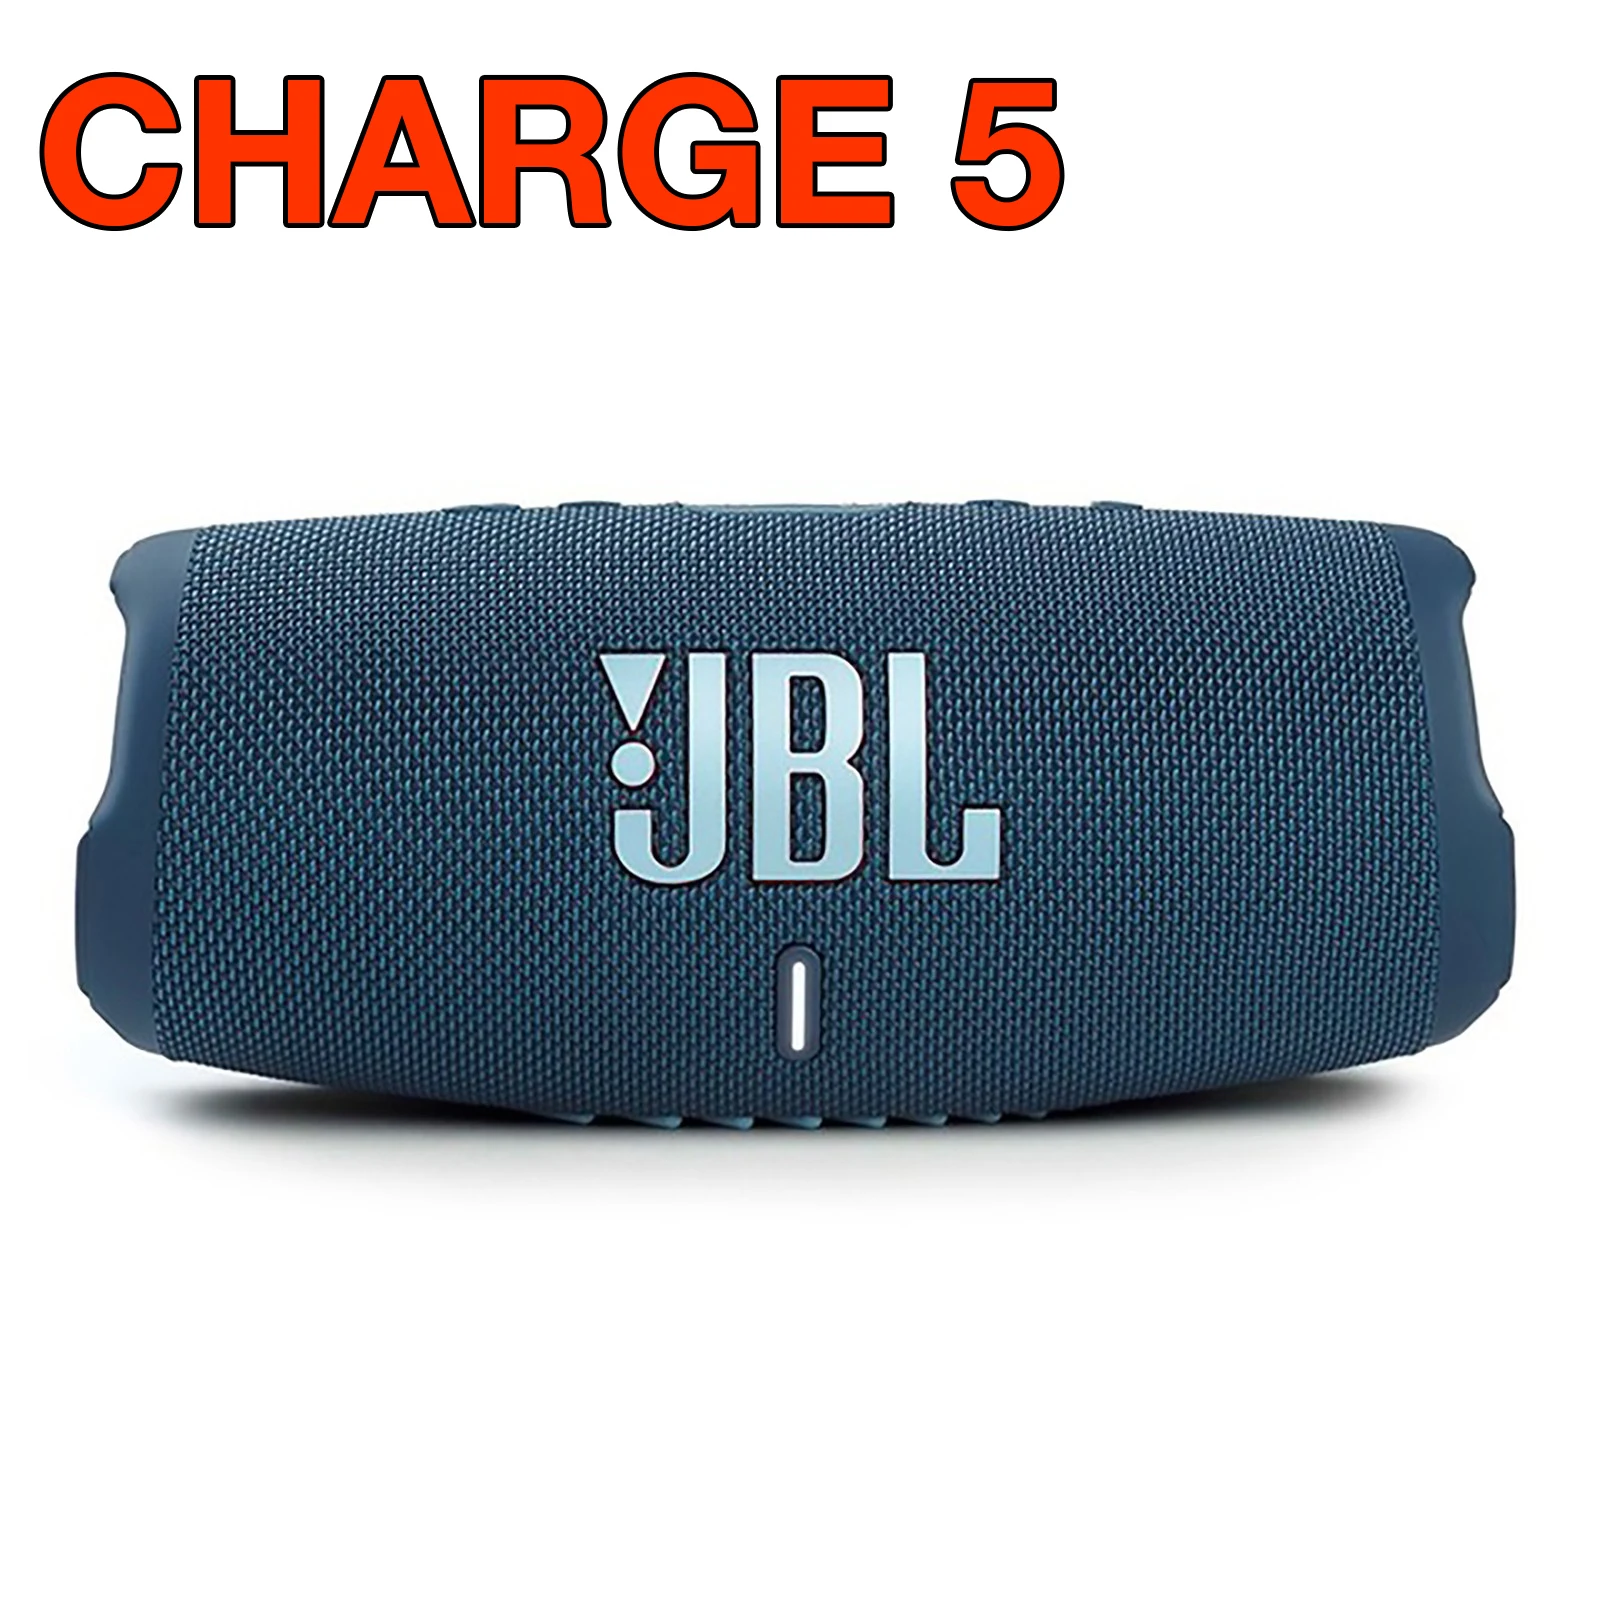 

Оригинальный Портативный беспроводной Bluetooth-Динамик JBL Charge 5, сабвуфер 5, IP67, водонепроницаемый пыленепроницаемый уличный музыкальный динам...